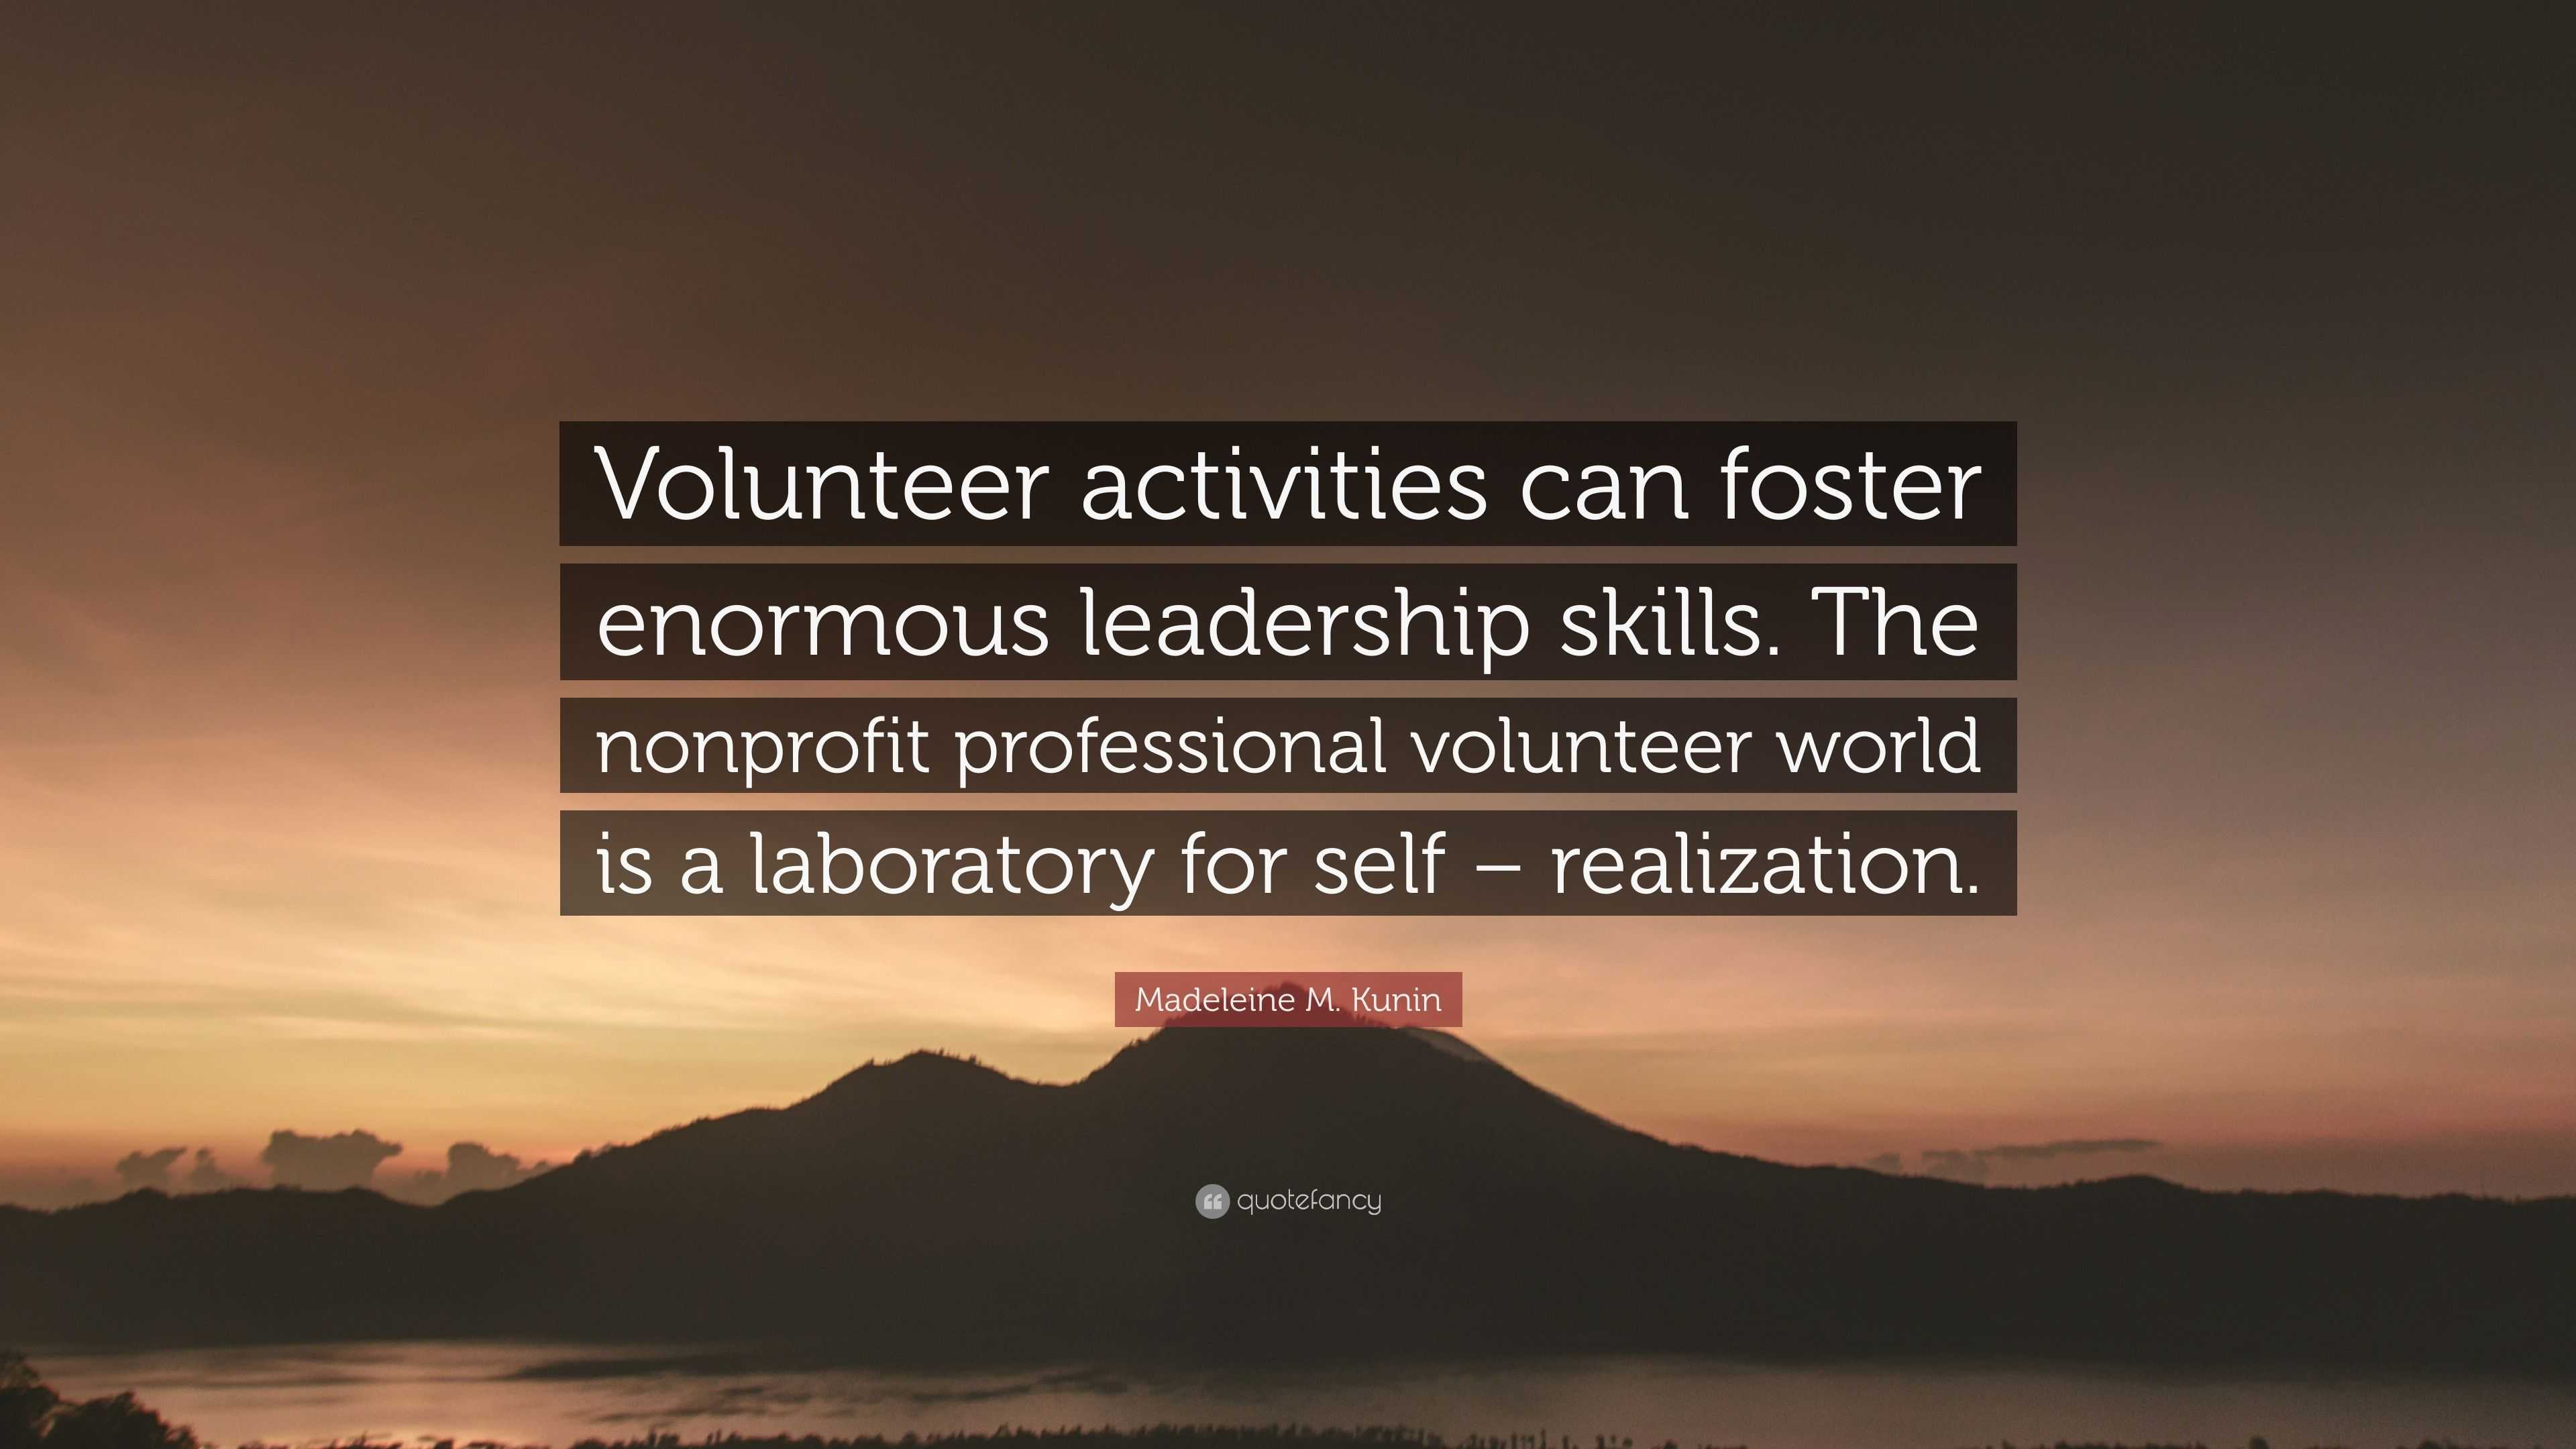 Madeleine M. Kunin Quote: “Volunteer activities can foster enormous ...